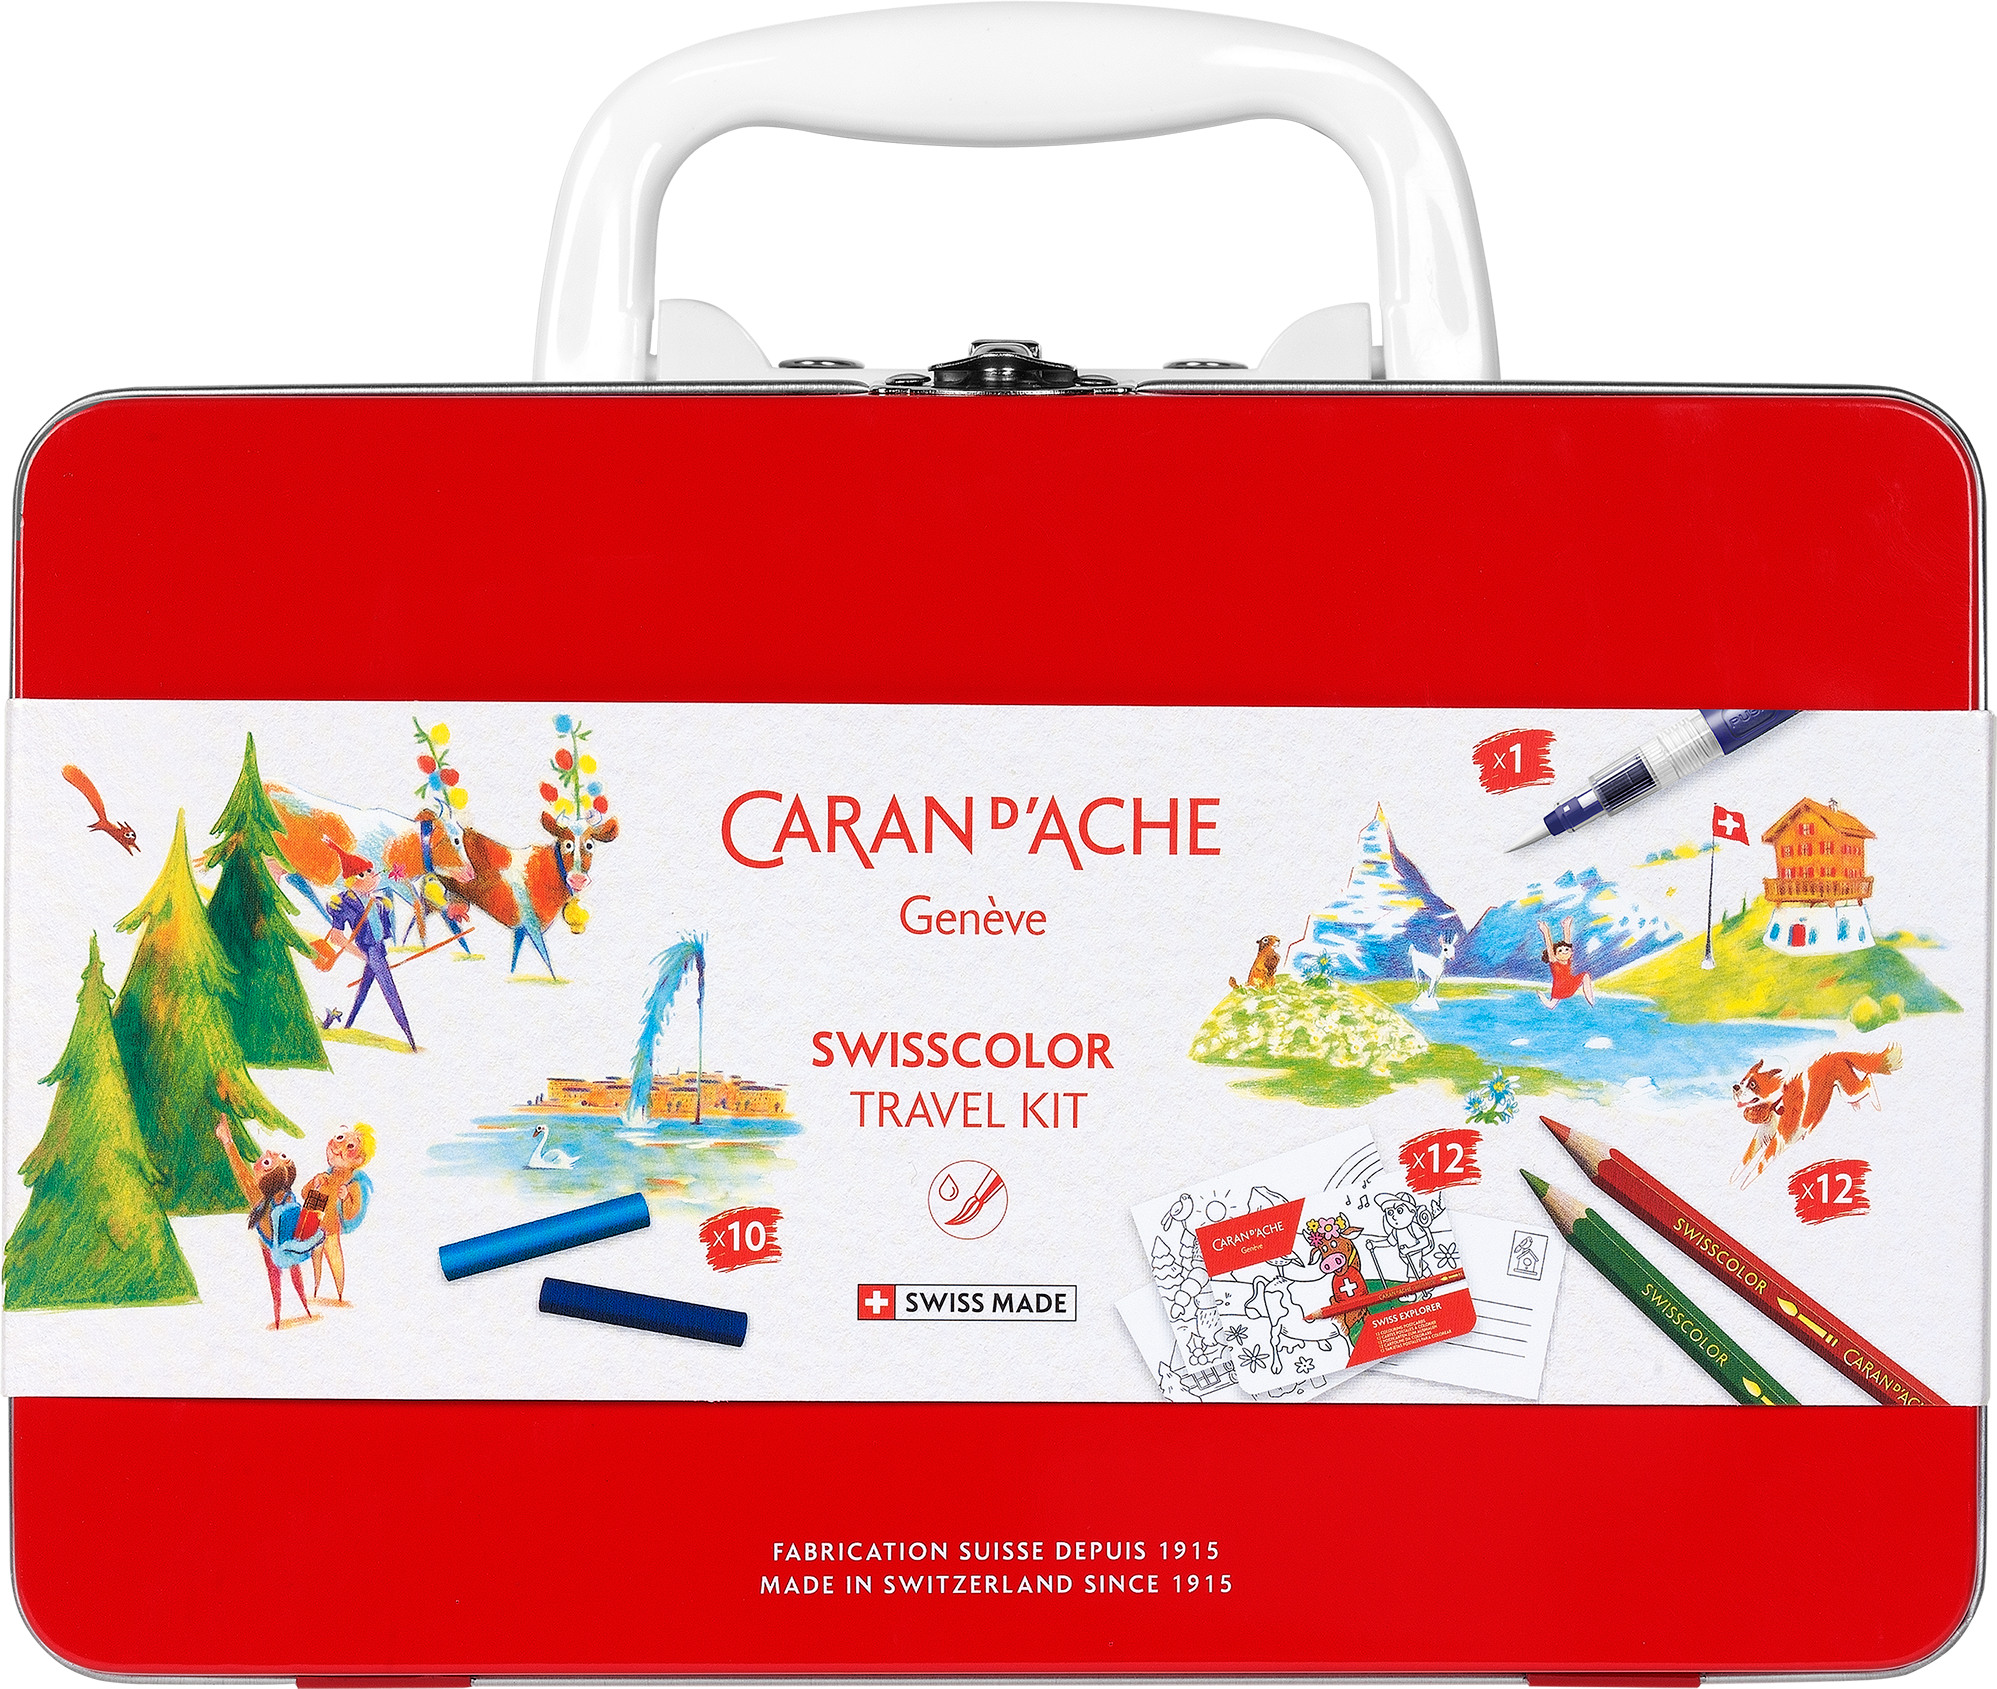 CARAN D'ACHE Swisscolor Travel Kit 3000.223